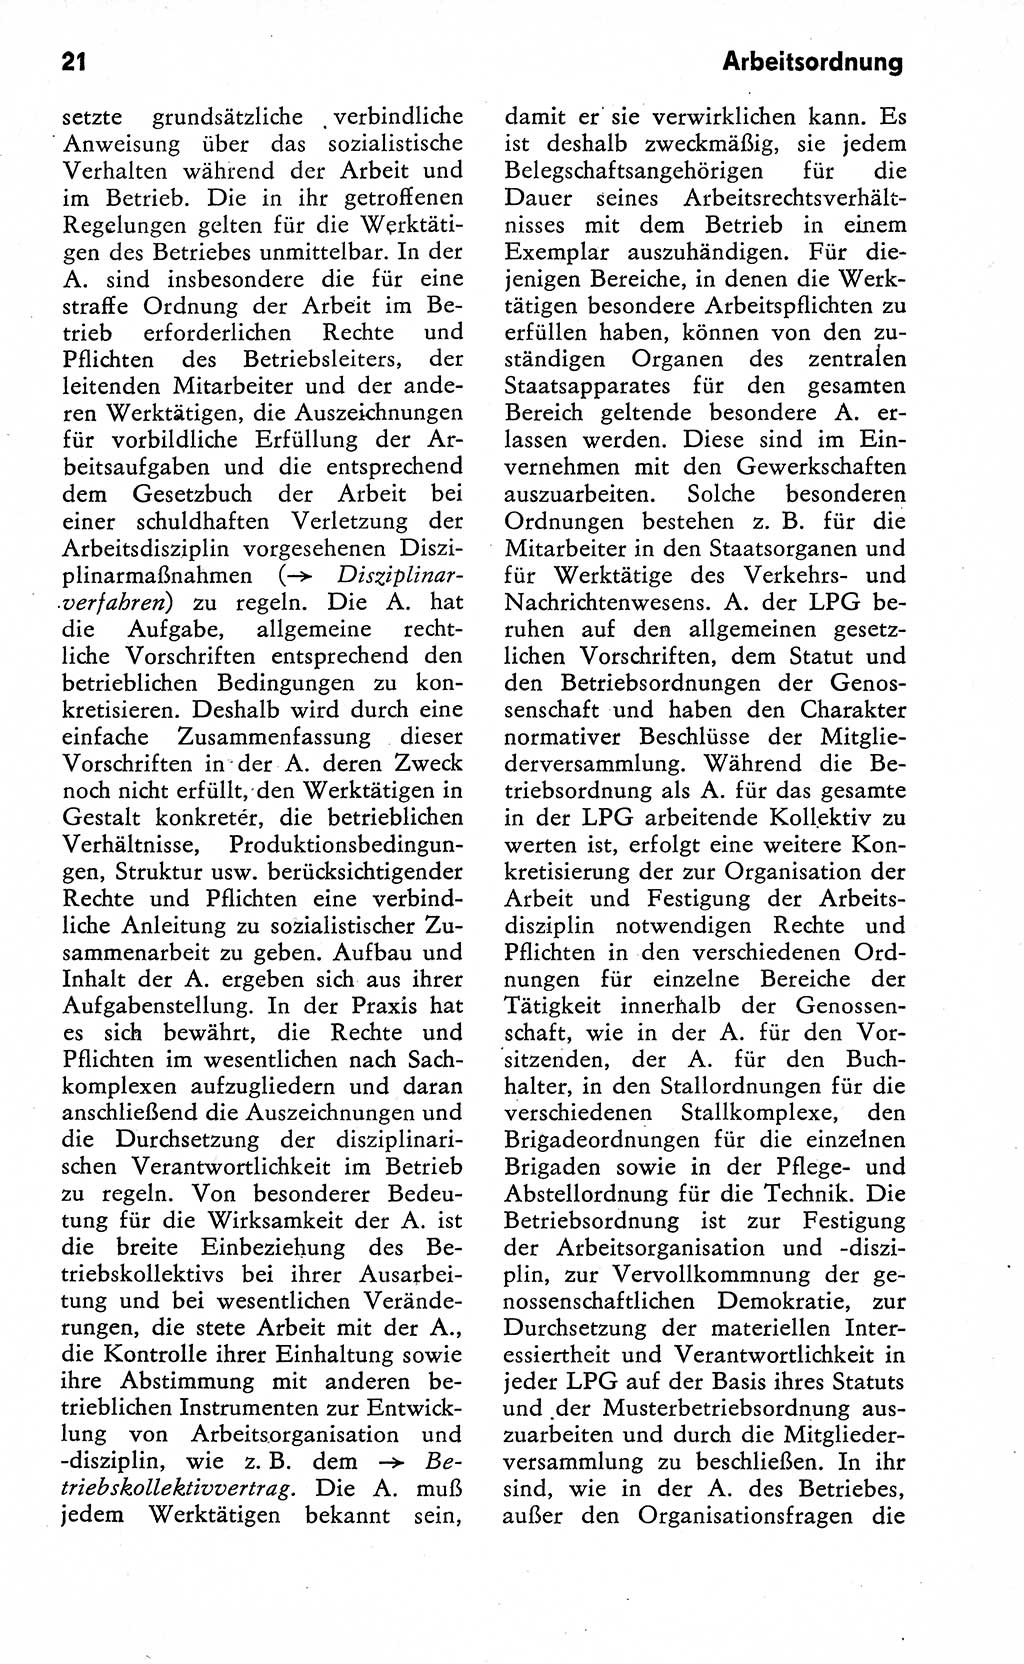 Wörterbuch zum sozialistischen Staat [Deutsche Demokratische Republik (DDR)] 1974, Seite 21 (Wb. soz. St. DDR 1974, S. 21)